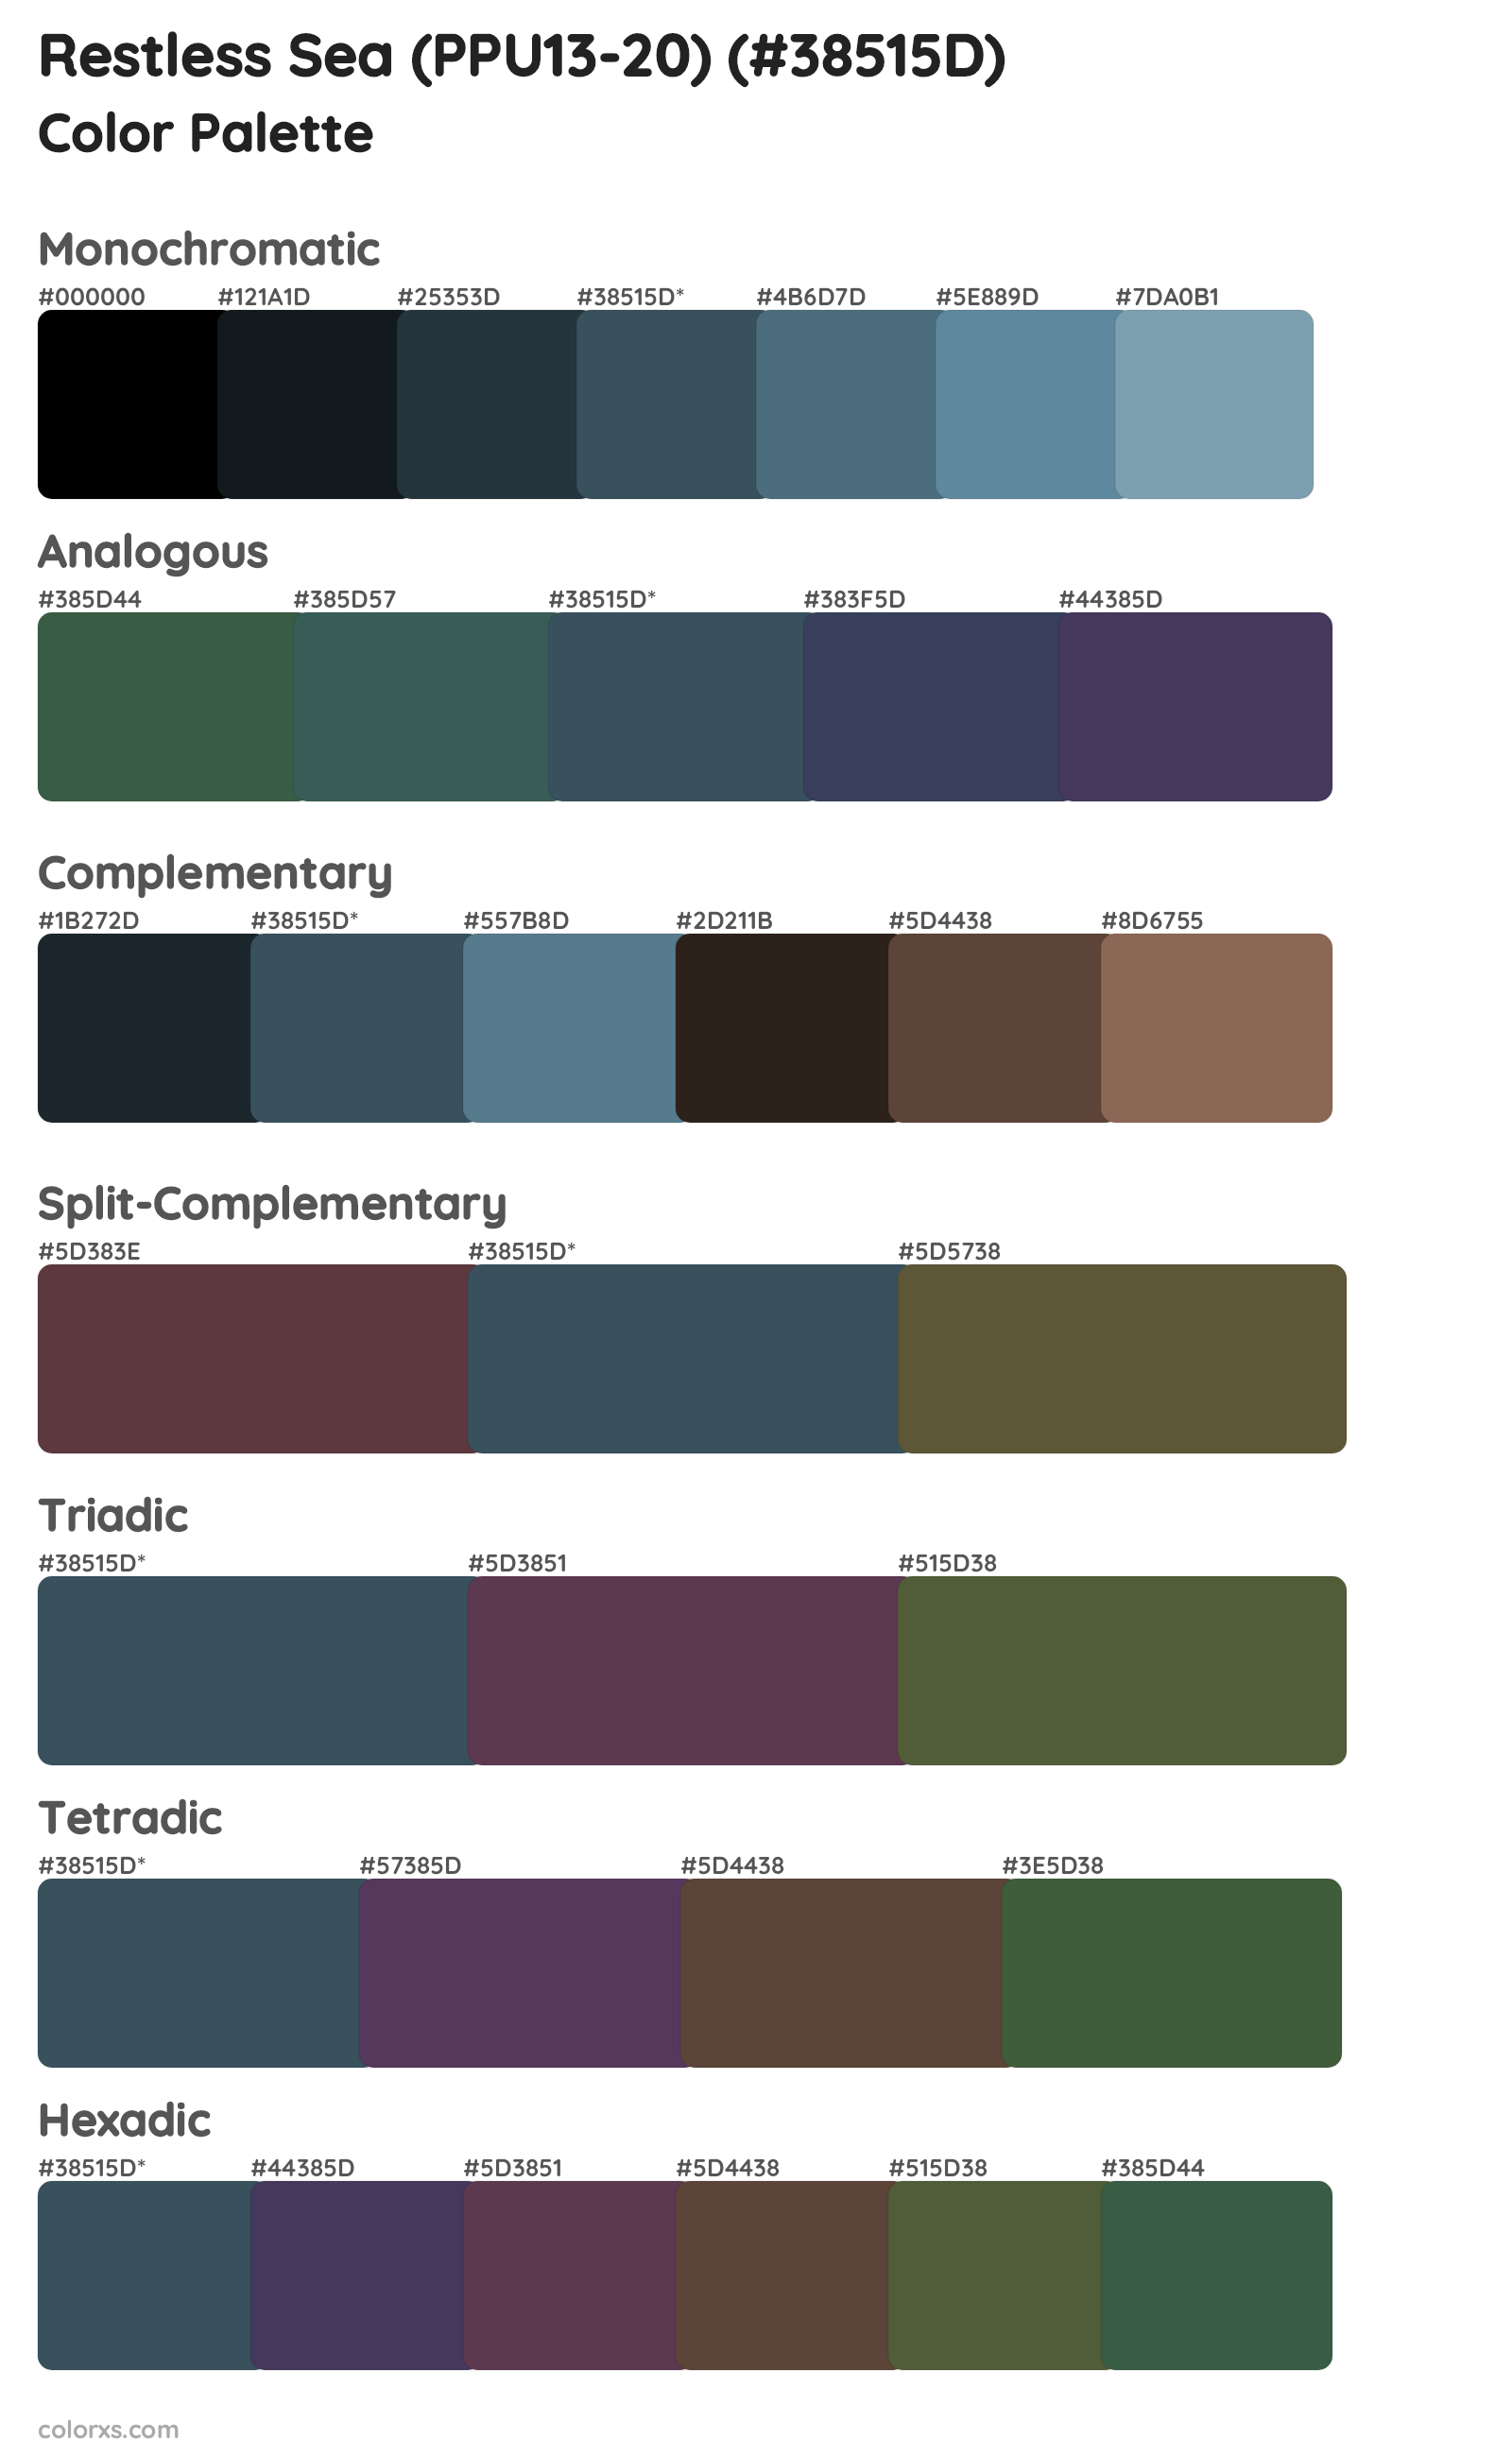 Restless Sea (PPU13-20) Color Scheme Palettes